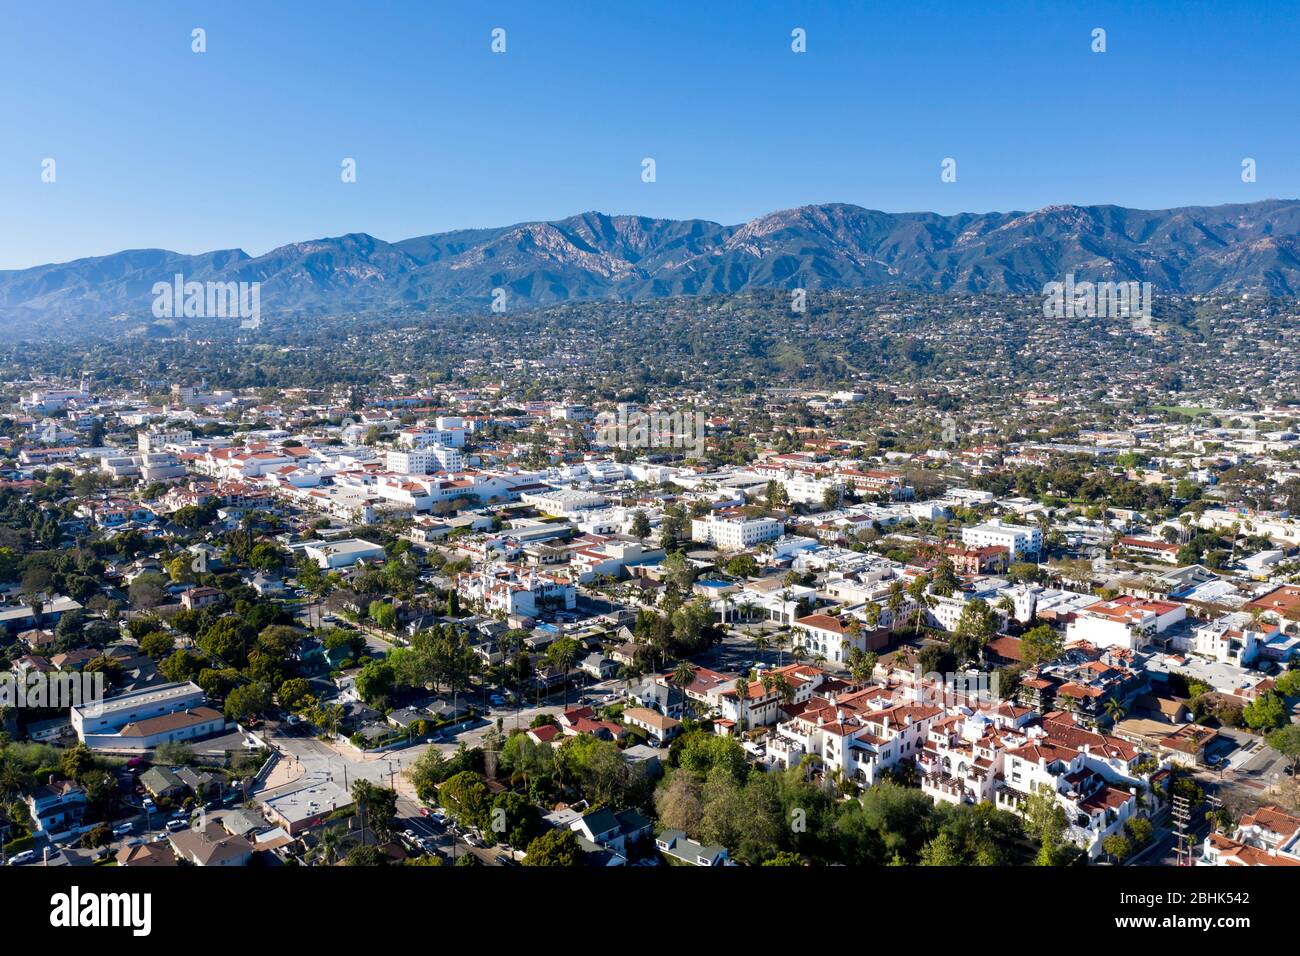 Vista aerea sul centro della città di Santa Barbara, California, in una giornata perfetta e limpida, sostenuta da montagne panoramiche Foto Stock